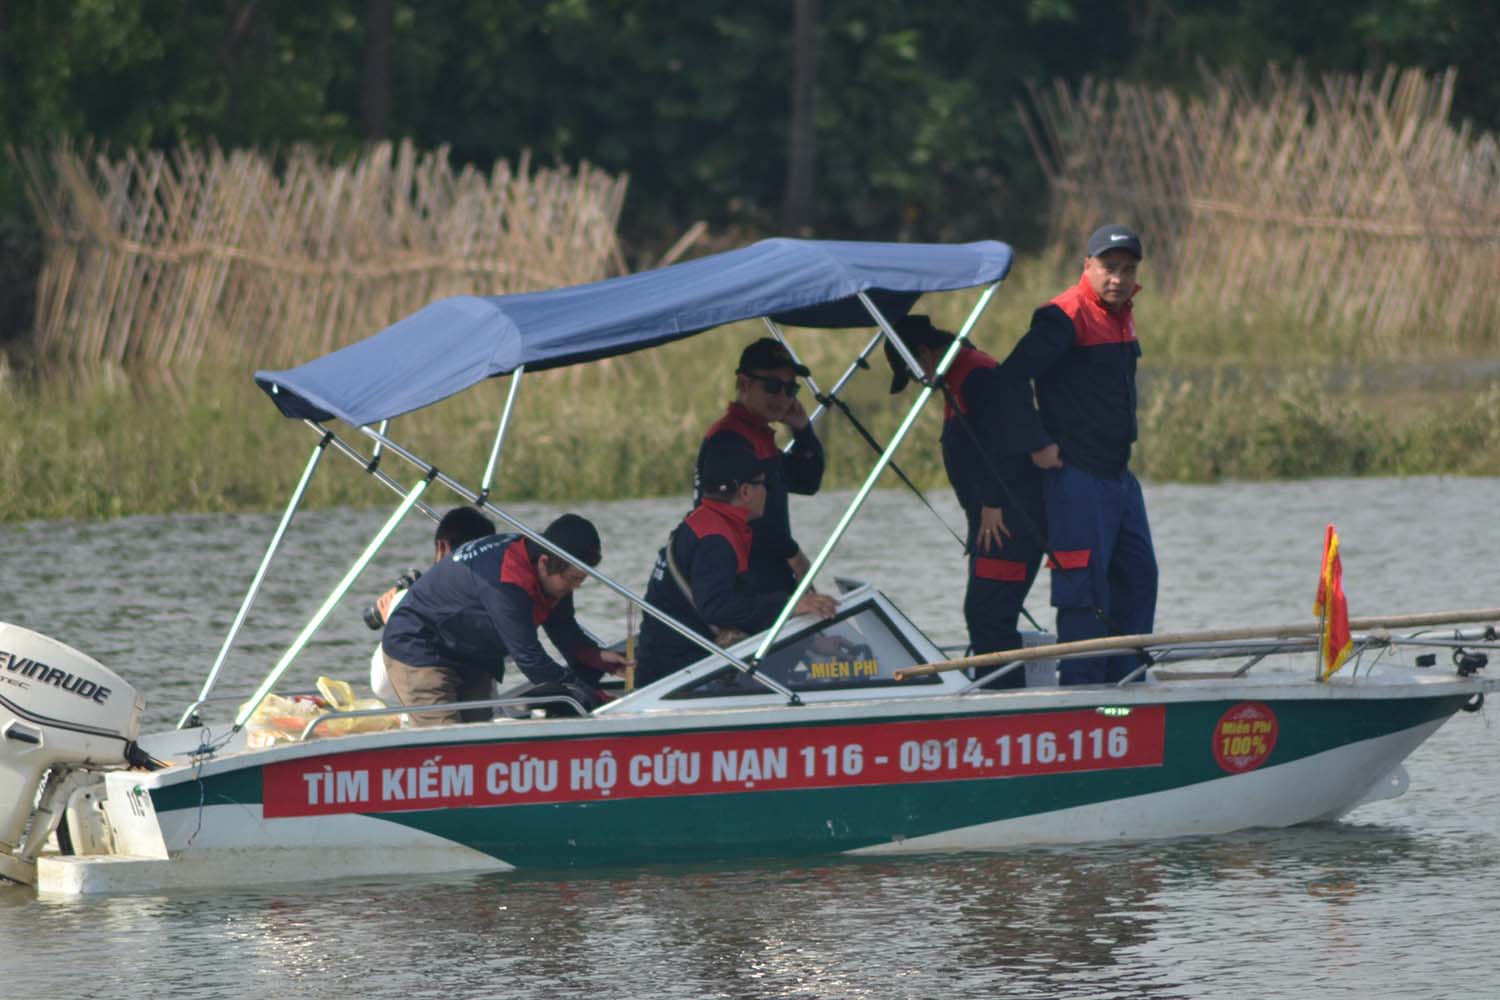 Đội cứu hộ 116 tìm kiếm cô gái tại khu vực cầu Cù Sơn, xã Vân Côn, Hoài Đức hồi tháng 8.2022 nhưng không có kết quả. Ảnh: Nguyễn Huy